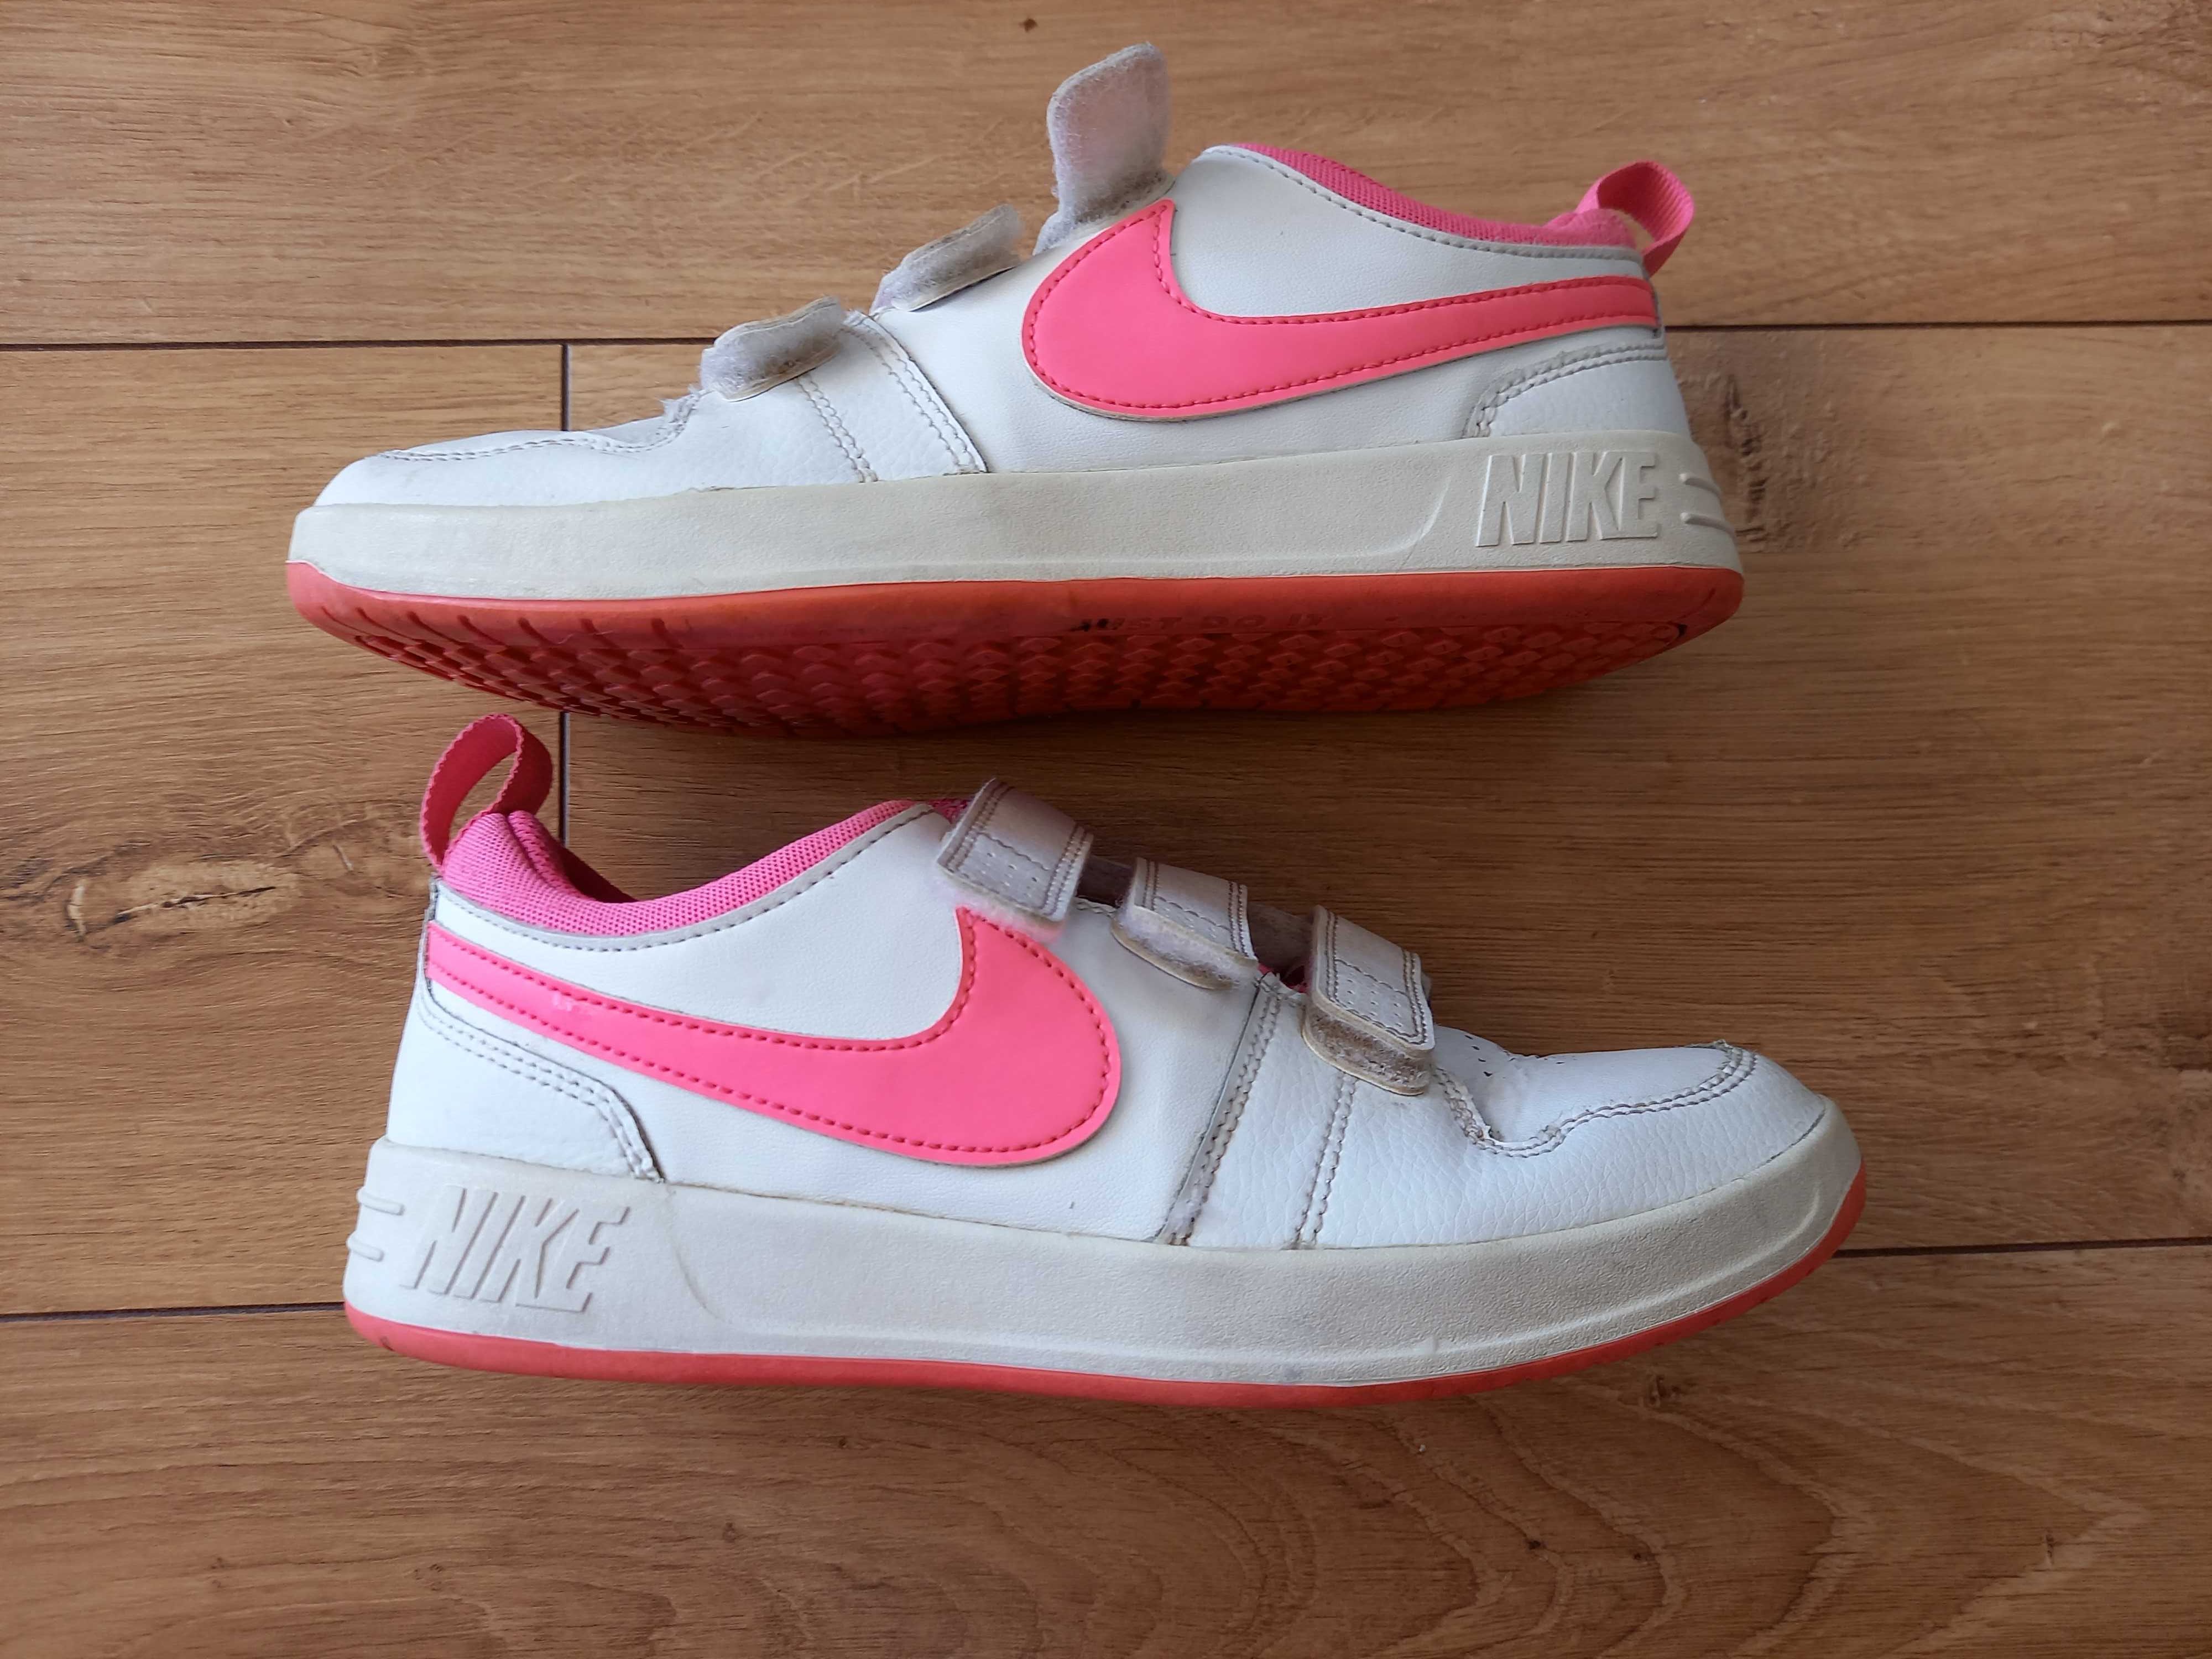 Buty Nike biało-różowe dziewczęce zapinane na rzepy rozmiar 36,5